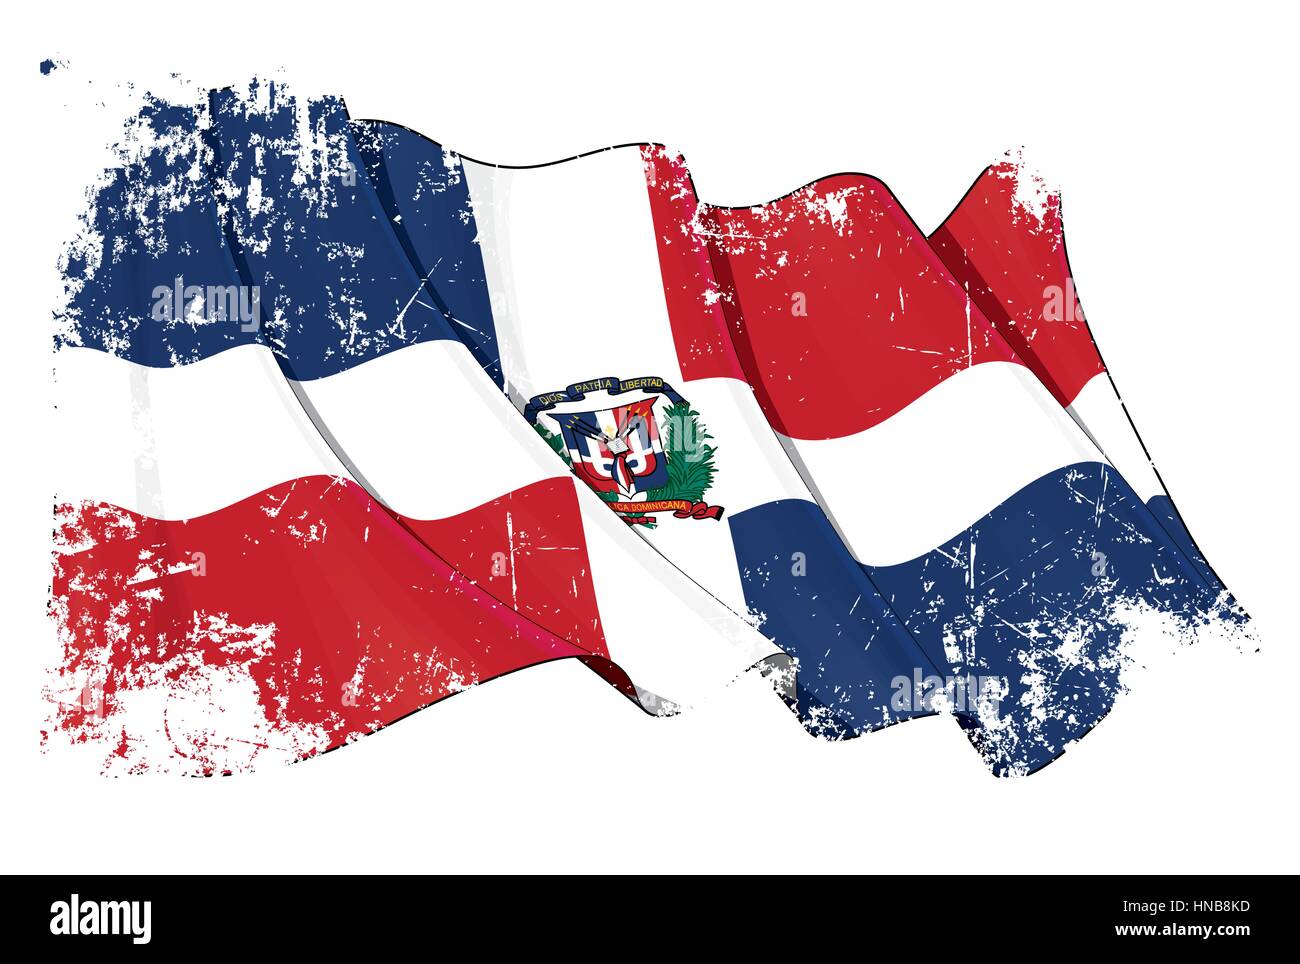 Grunge-Vektor-Illustration einer wehenden Flagge Dominikanische Republik. Alle Elemente übersichtlich organisiert. Textur, Linien, Schattierungen & Flagge Farben auf separaten laye Stock Vektor